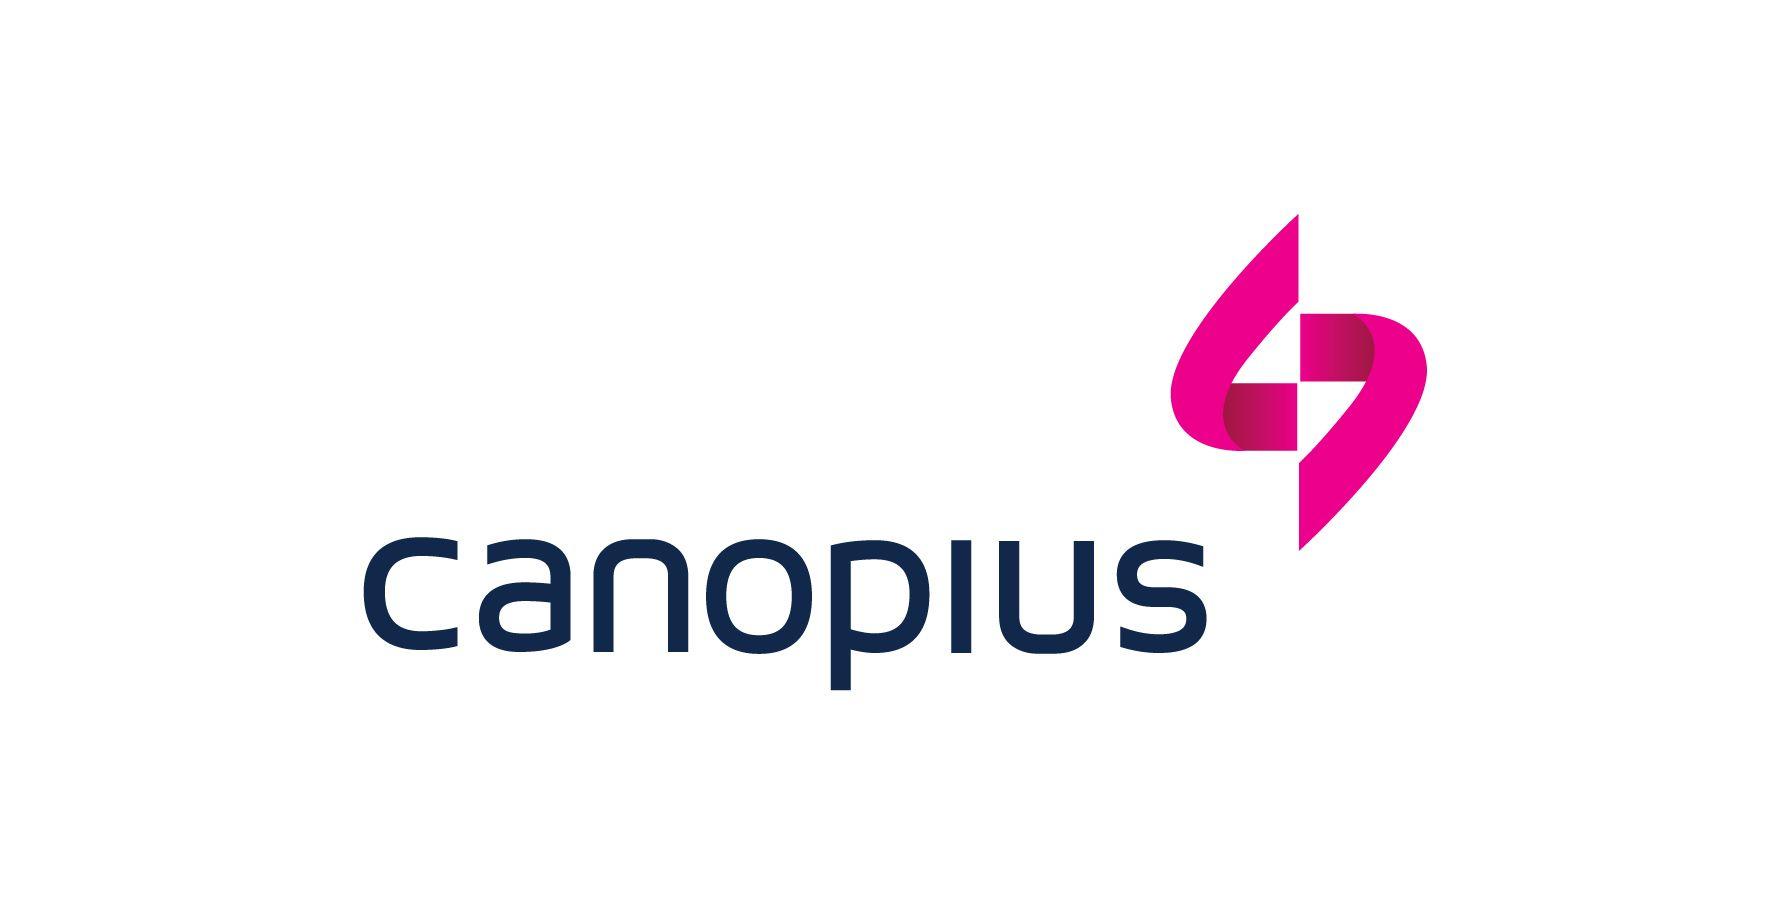 Google Main Logo - Canopius 1 main logo&A Media